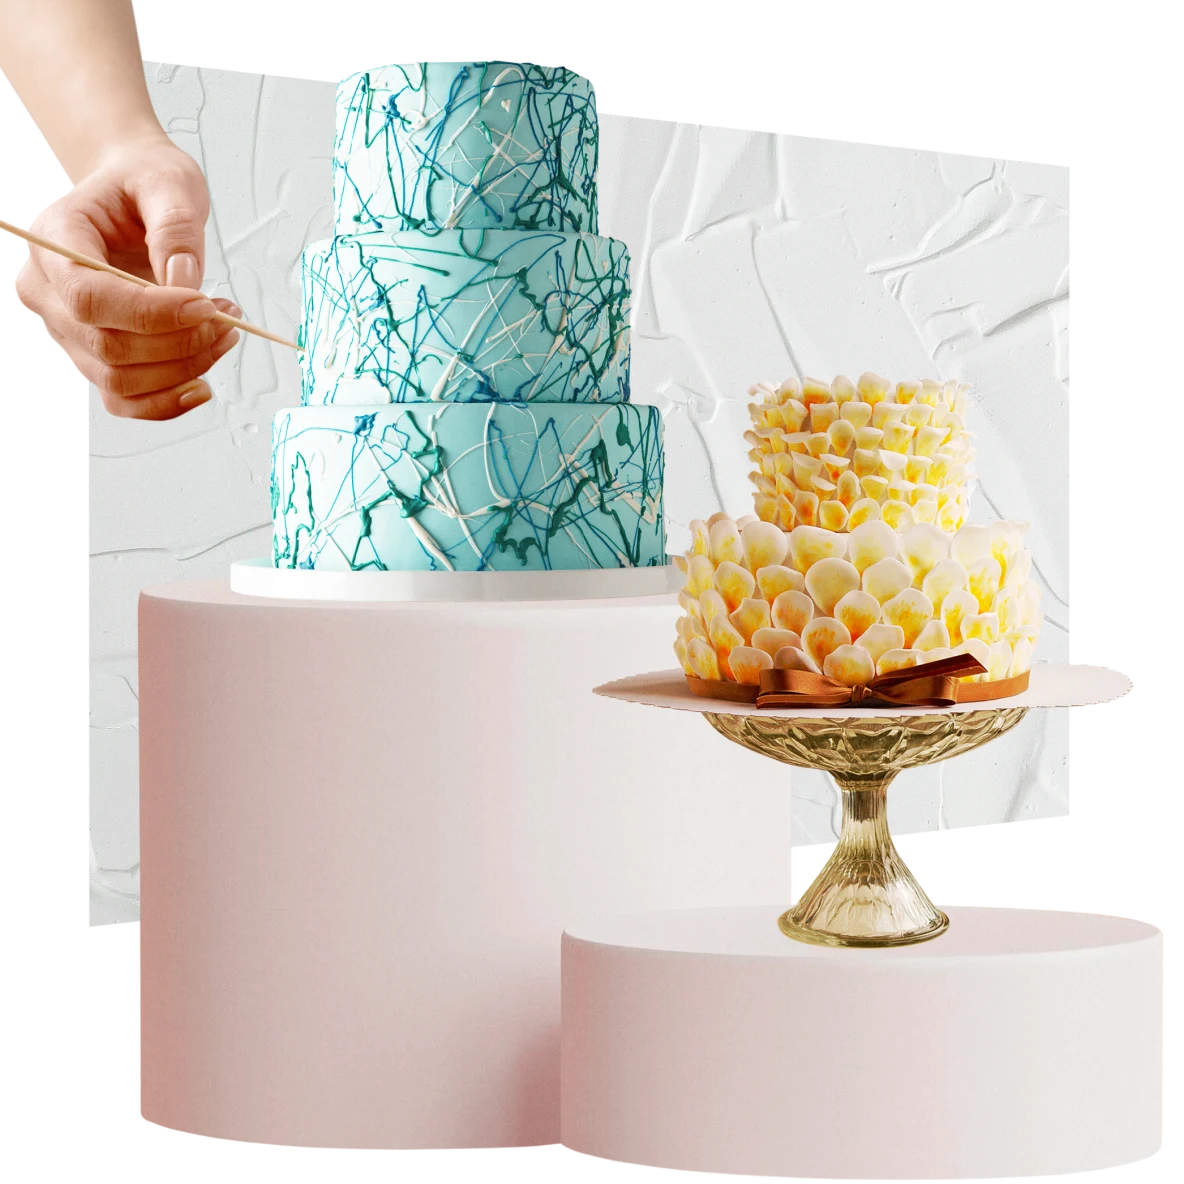 A sinistra, torta a tre piani color verde chiaro, a destra torta a due piani più piccola bianca e gialla. Una mano applica dei dettagli sulla torta a sinistra. Sullo sfondo, della glassa bianca.